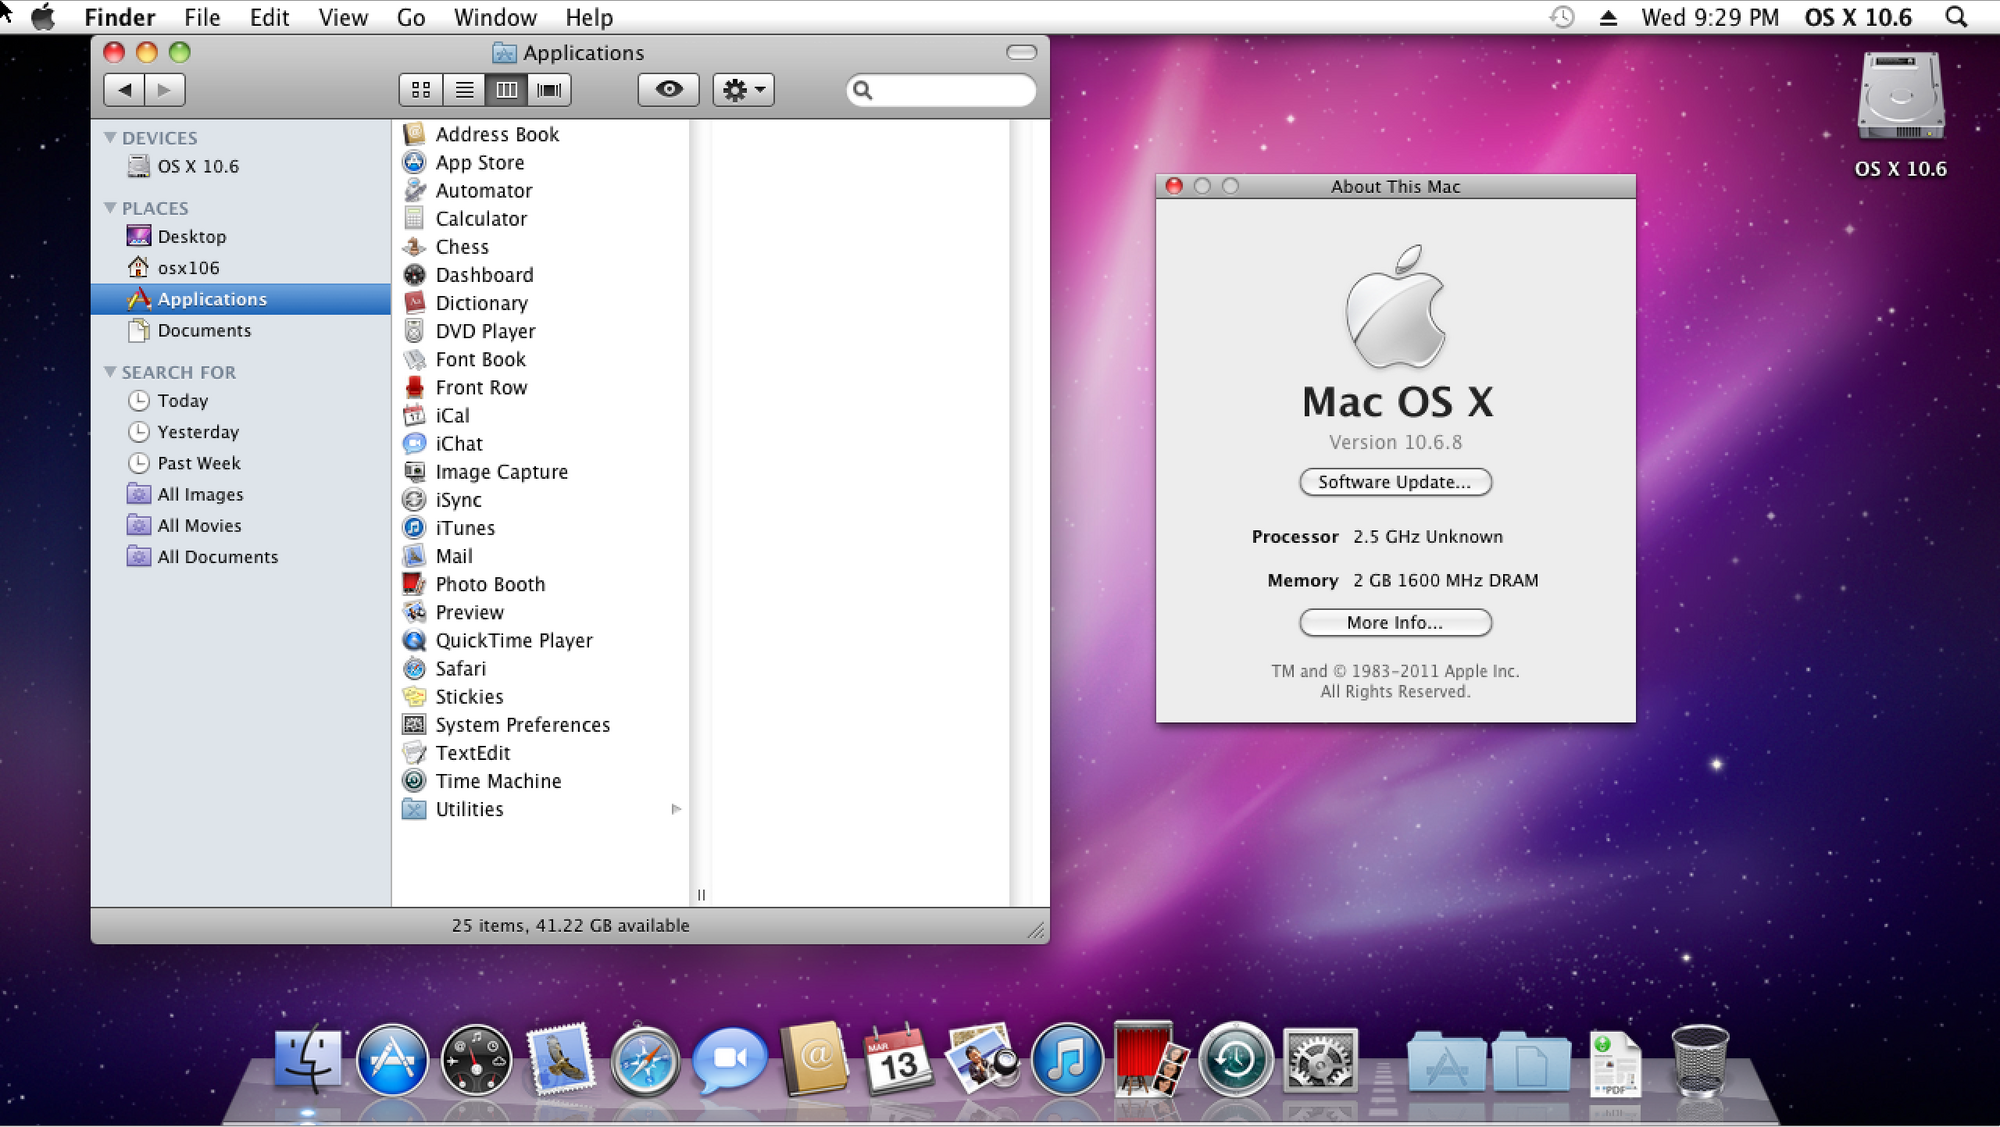 iweb for mac 10.5.8